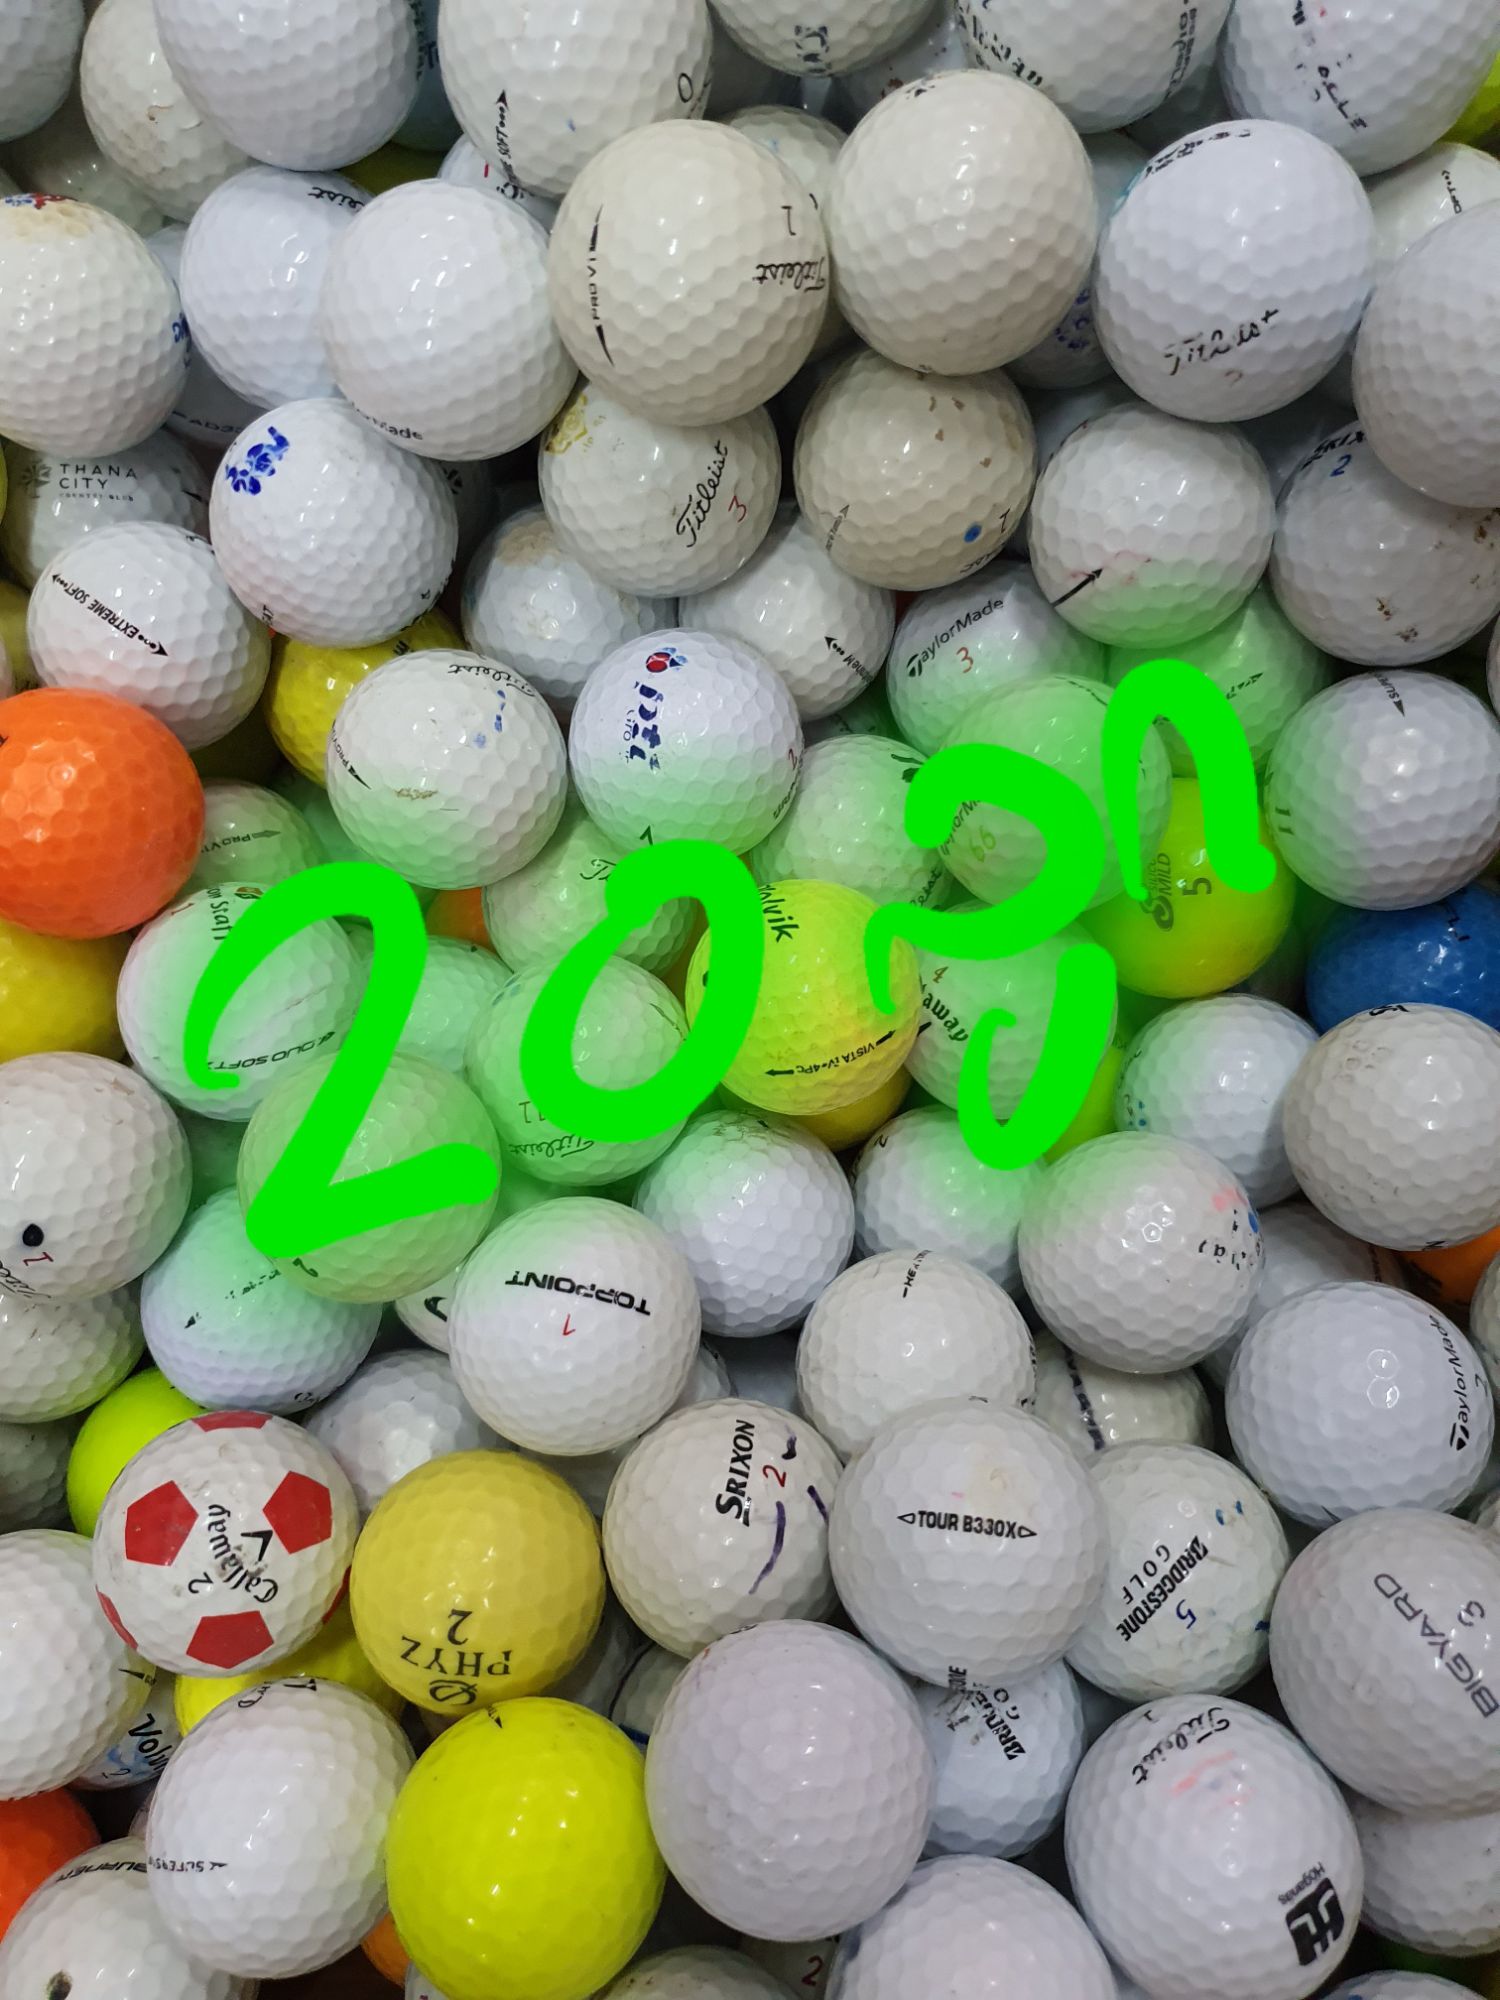 ลูกกอล์ฟ Golf Ball รวมยี่ห้อ 20 ลูก 190 บาท